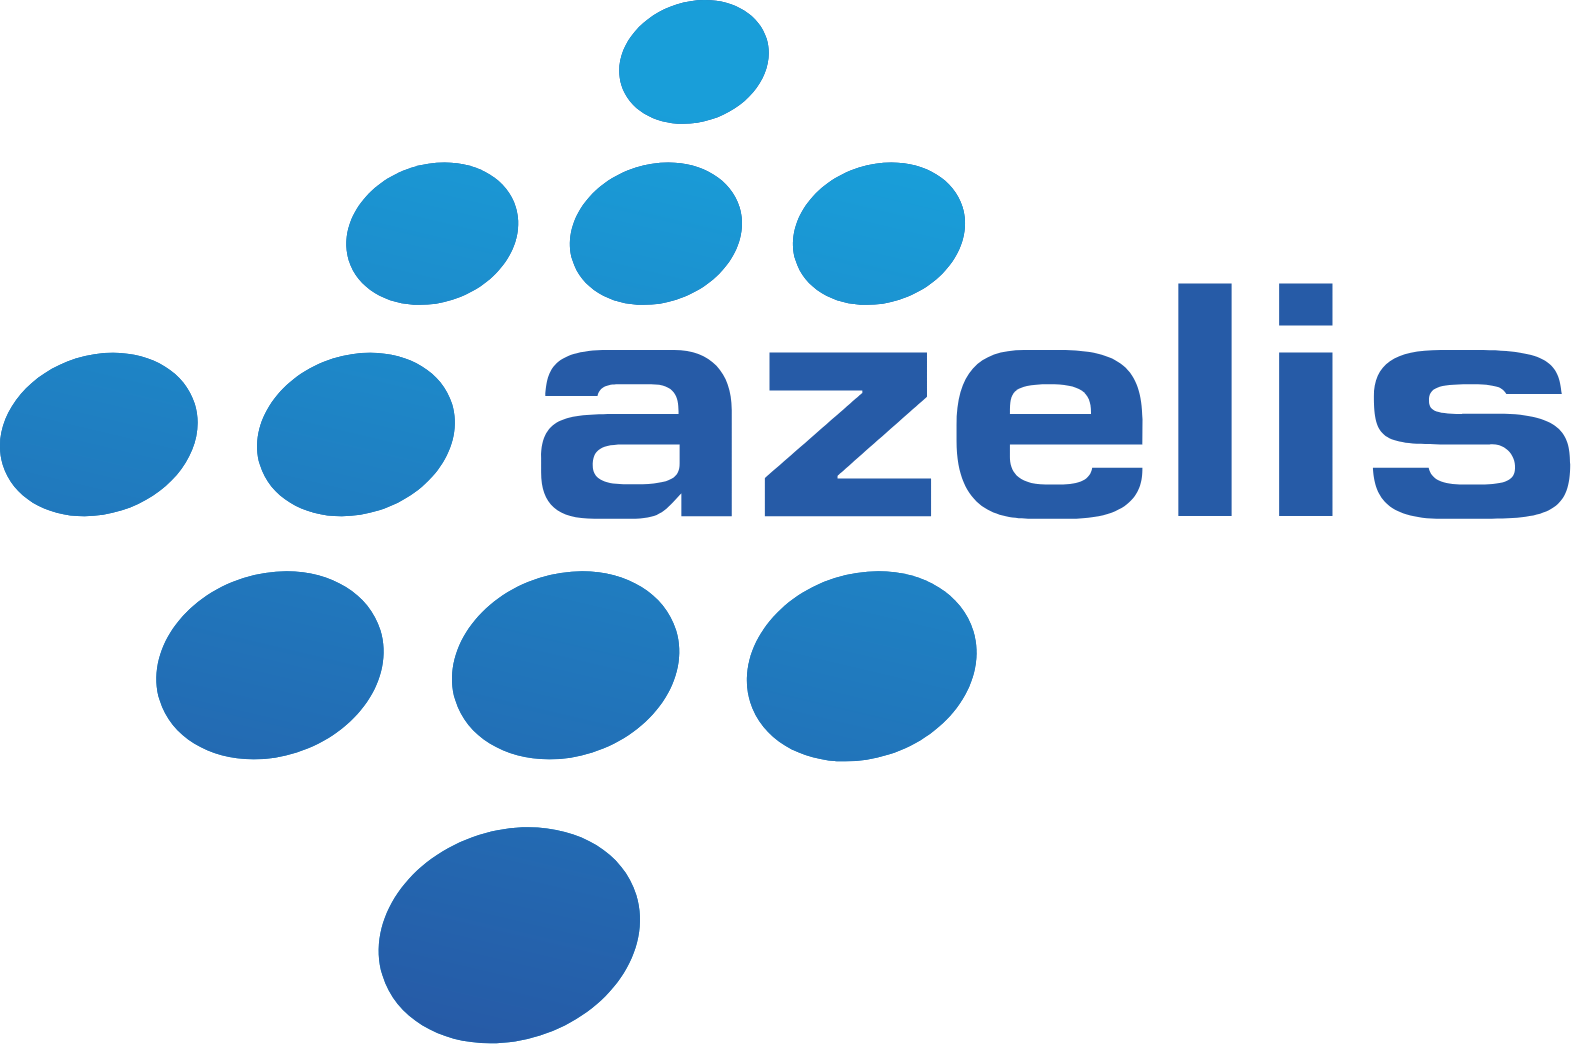 Azelis Group logo (PNG transparent)